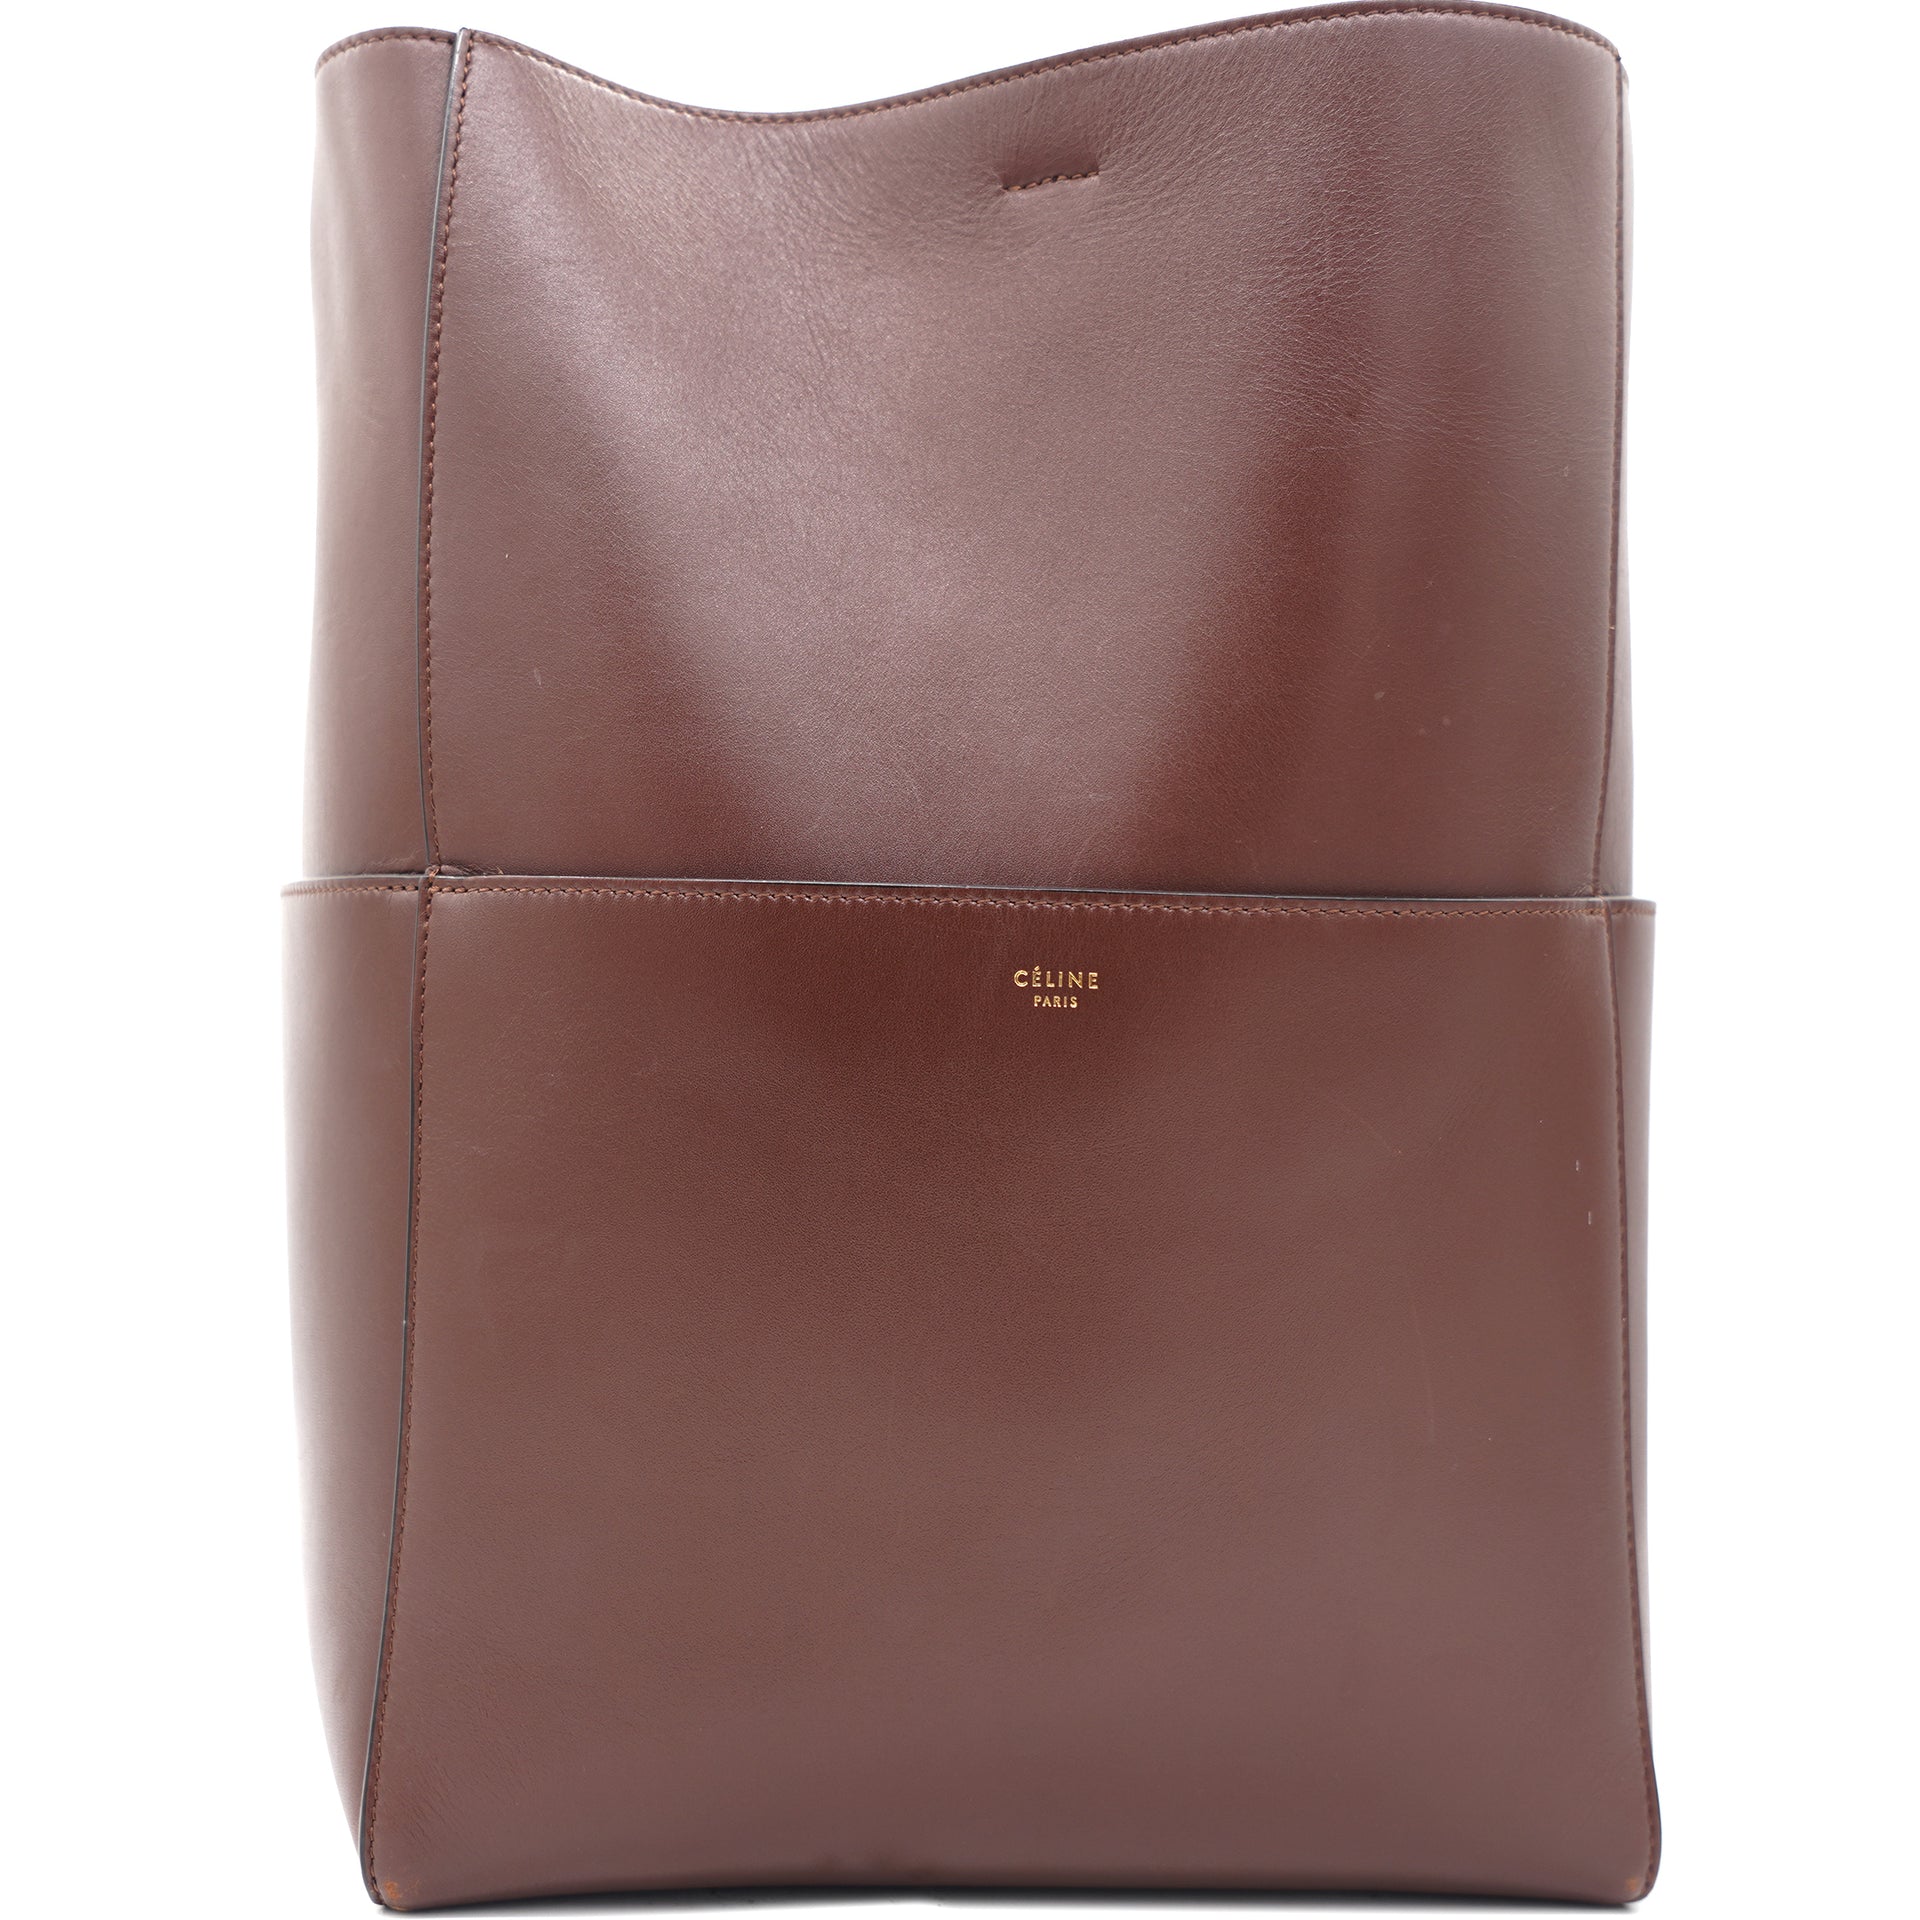 CELINE Sangle bucket small shoulder bag Color Taupe beige-brownish